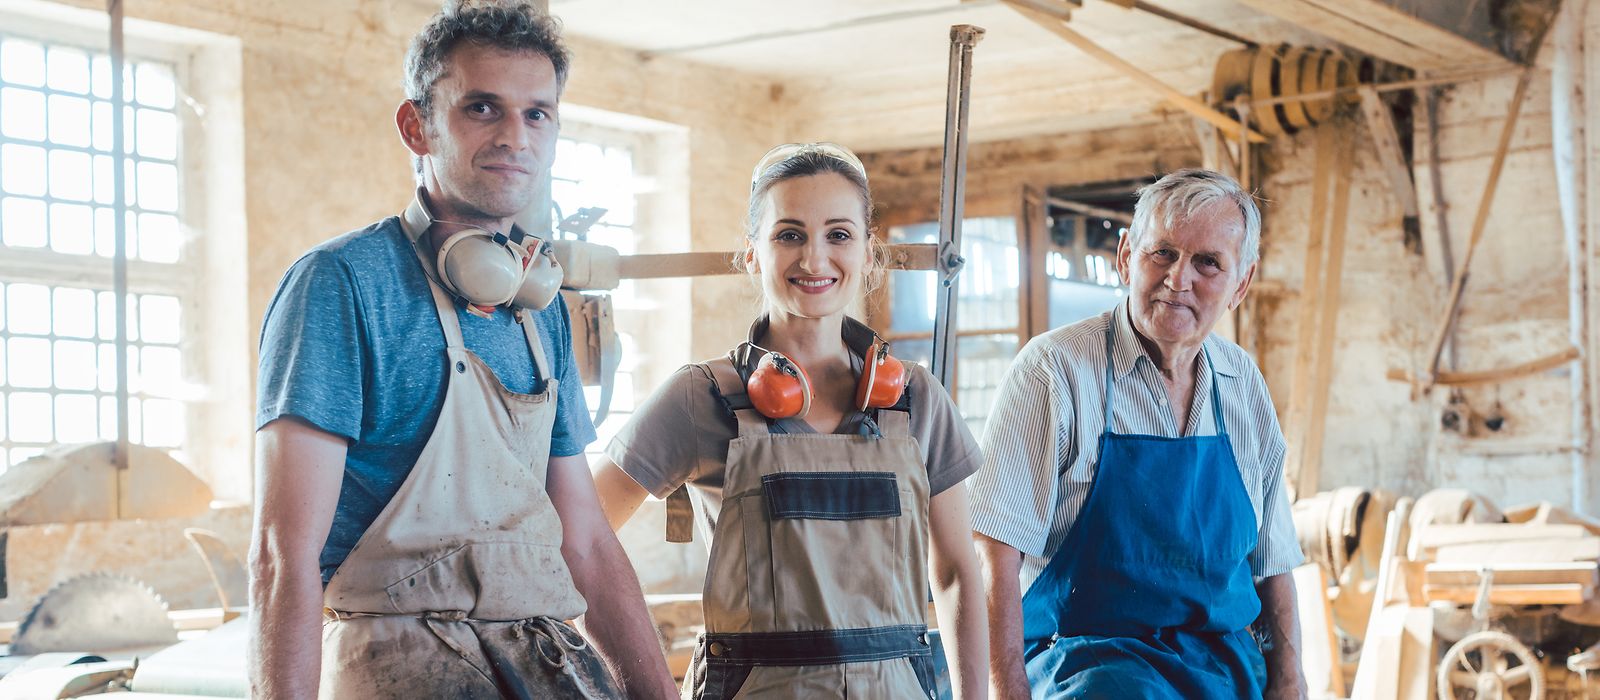 Zwei Männer und eine Frau unterschiedlichen Alters in Arbeitskleidung in einer Werkstatt